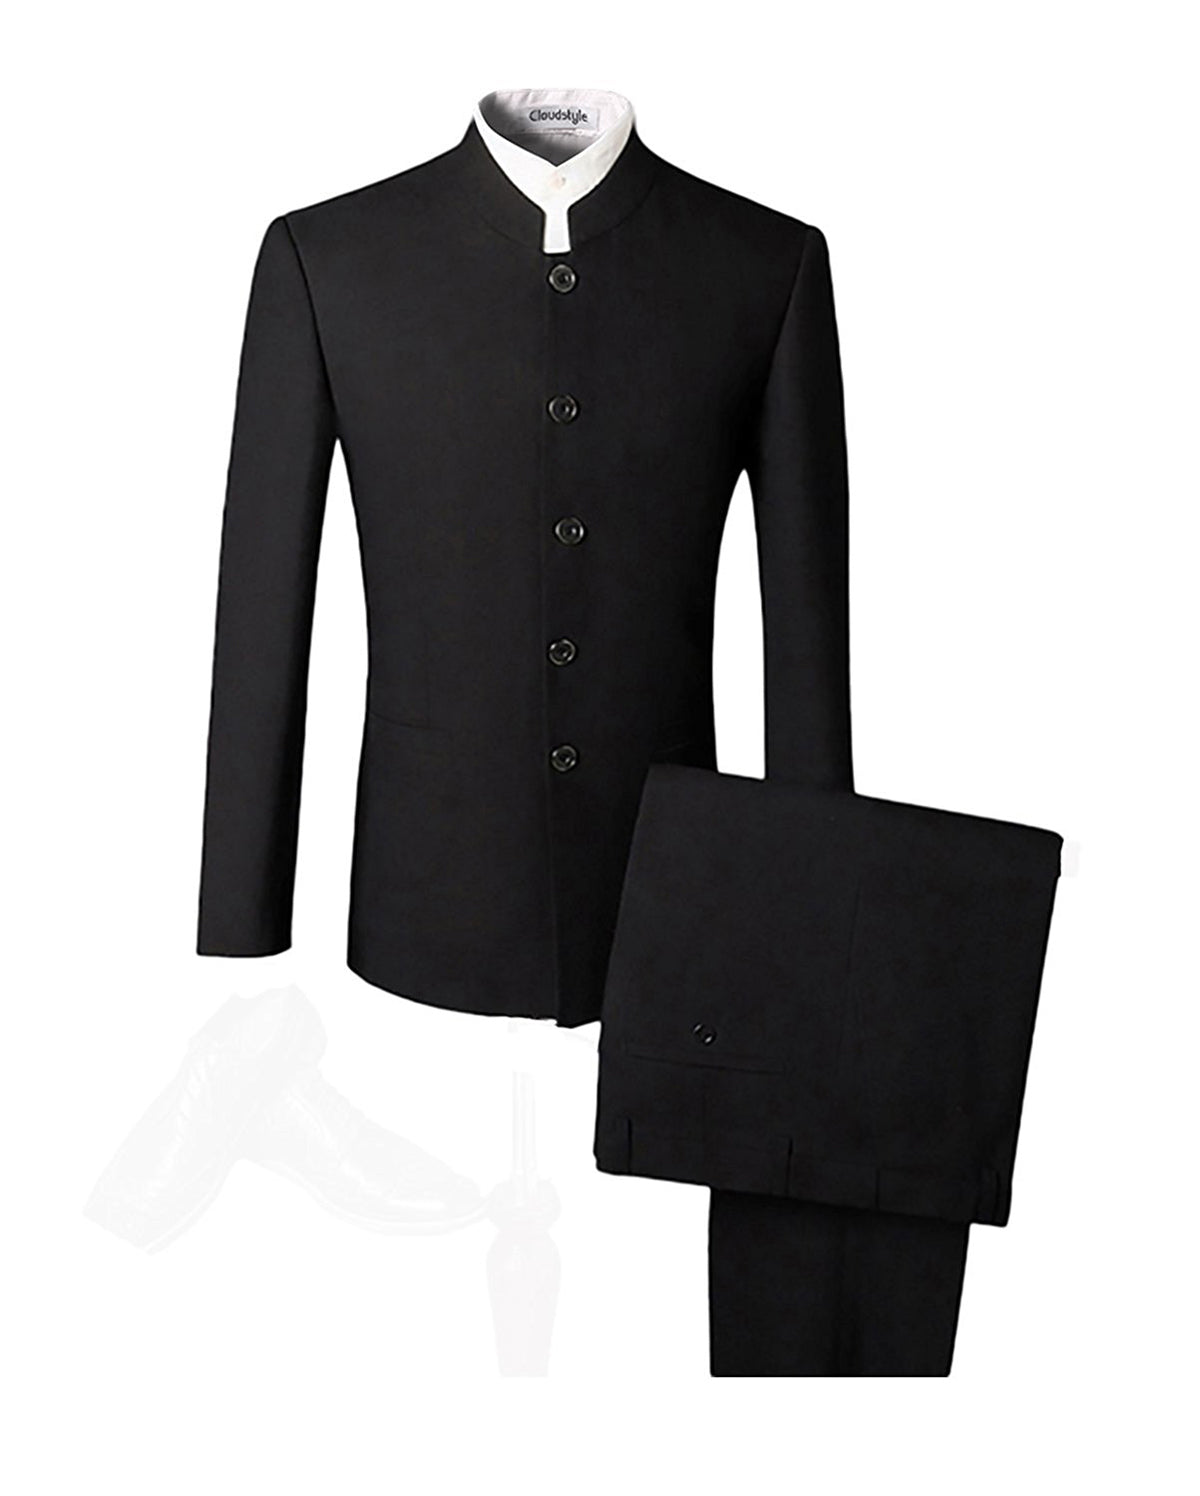 Men's Tunic Suit Two Piece Black Suit